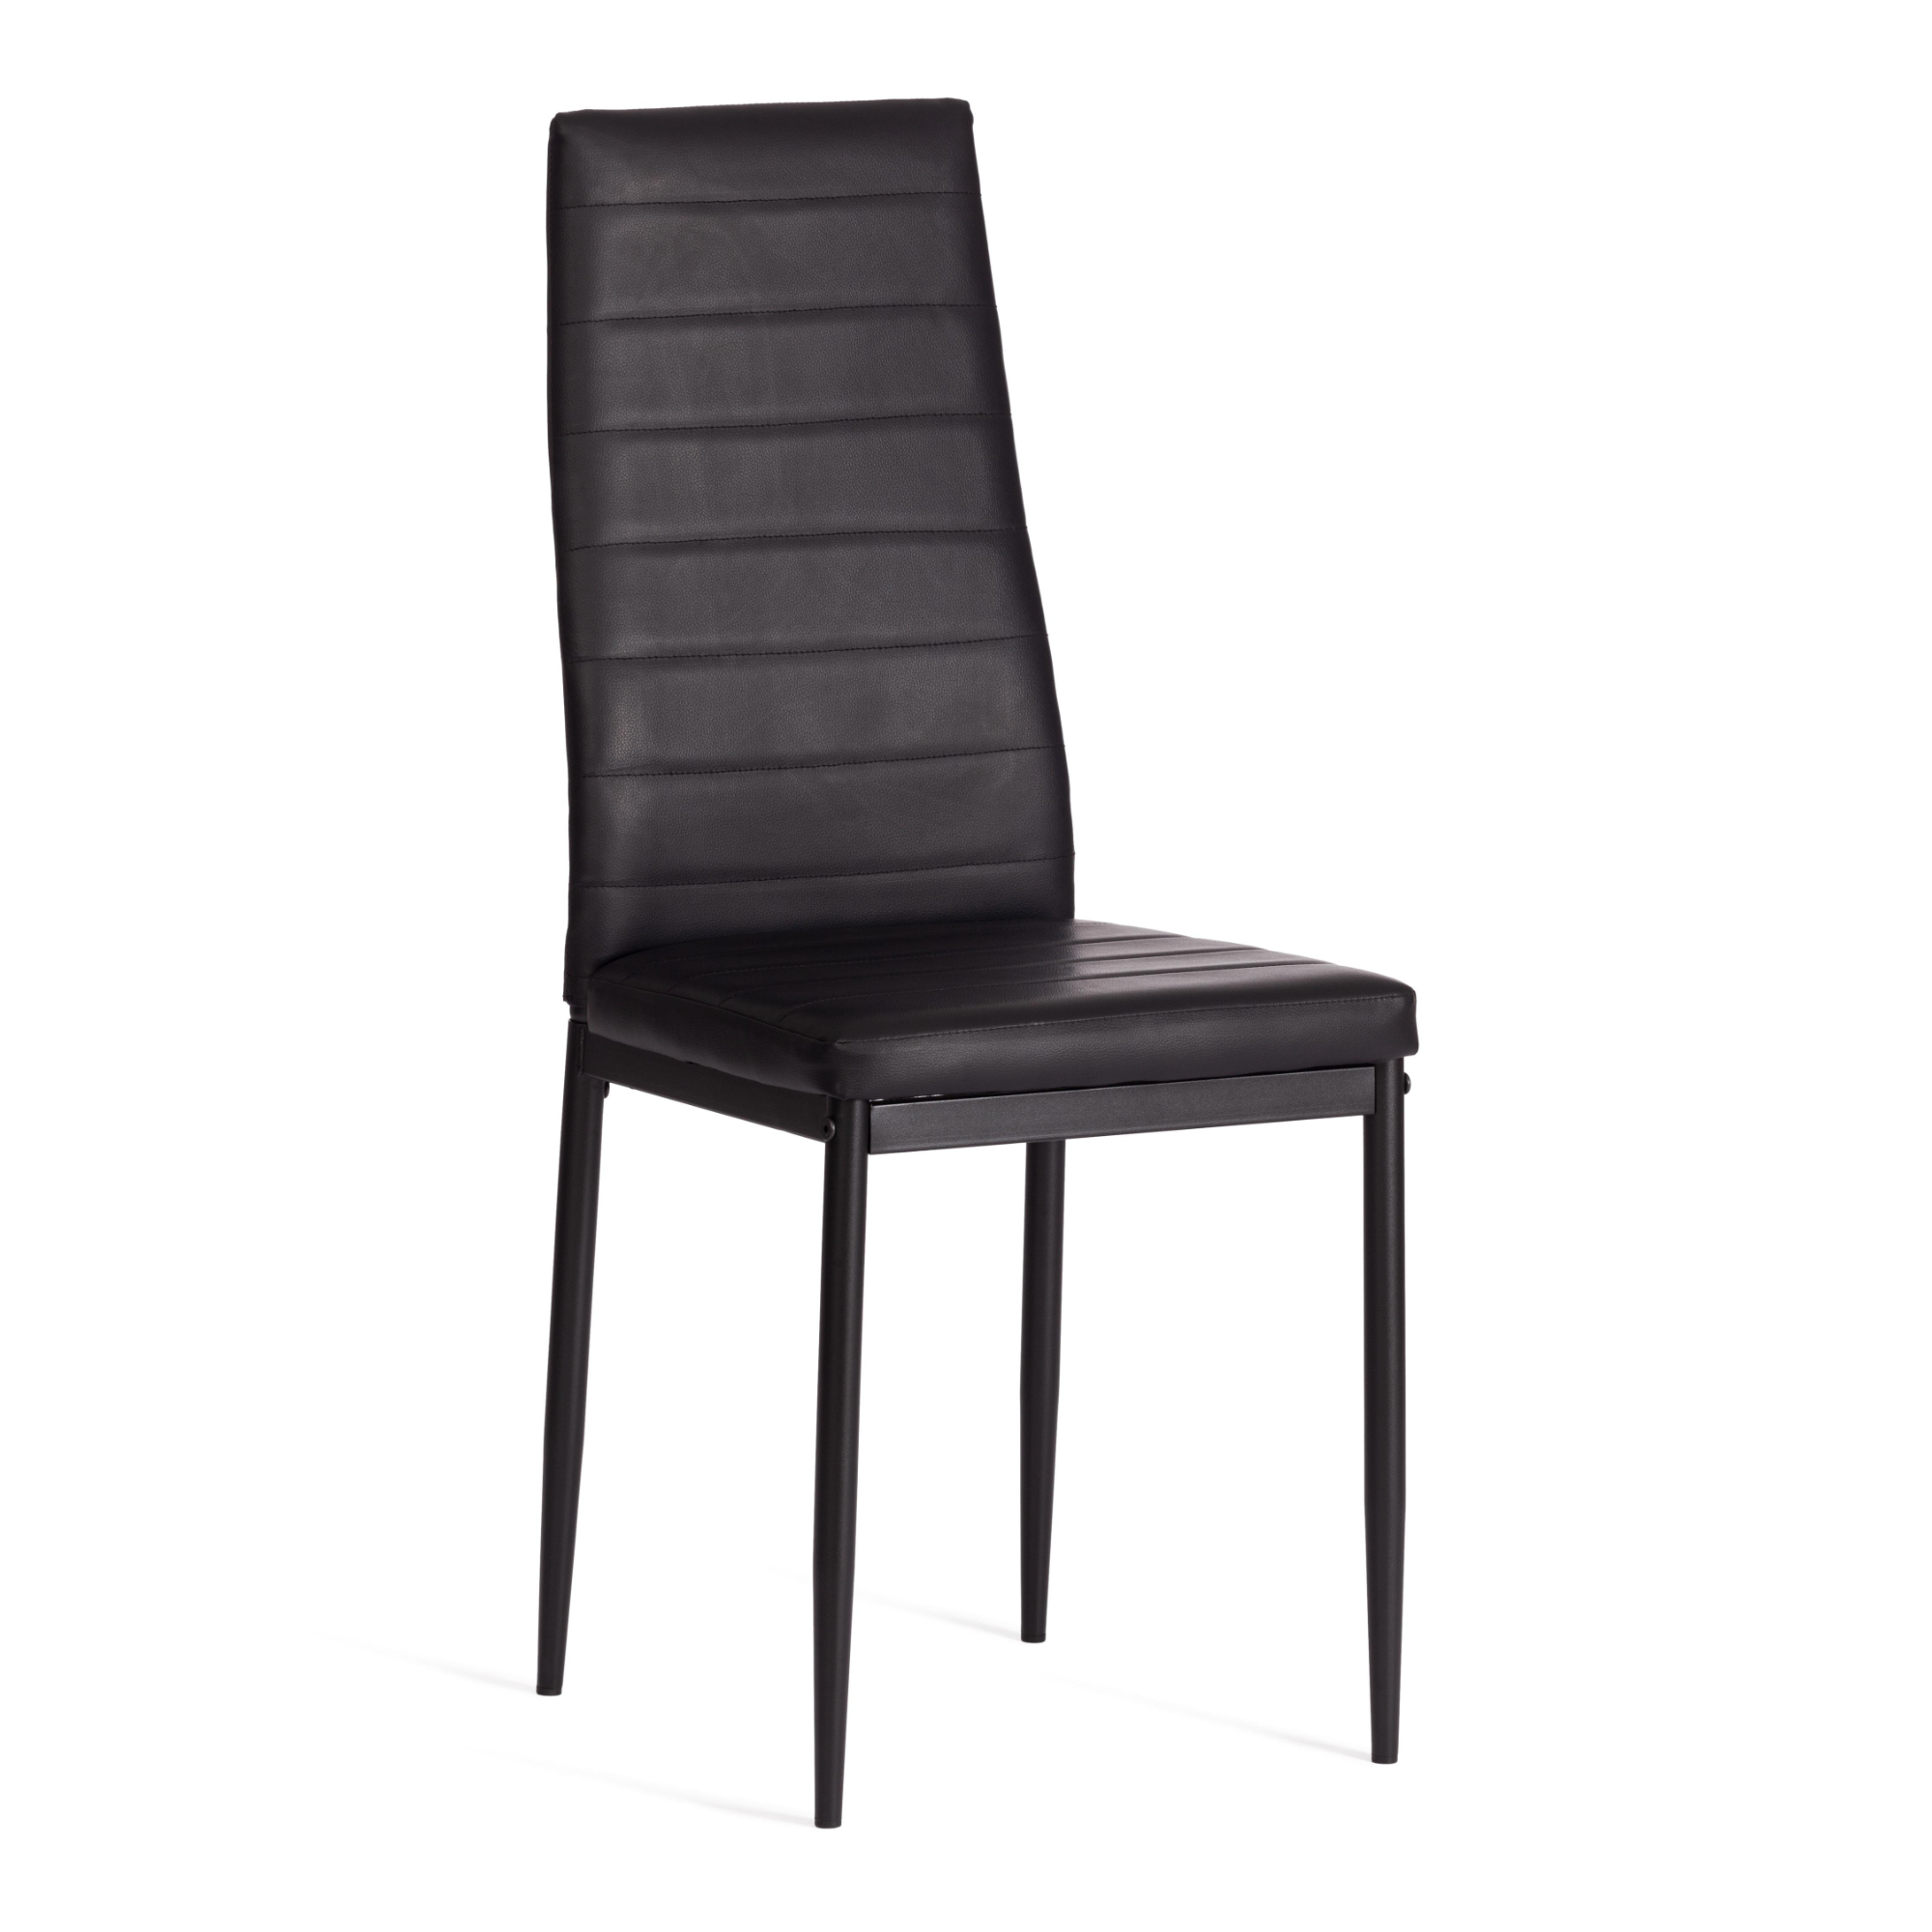 Стул ТС Easy экокожа с металлом черный 49х41х98 см нордический минималистичный дизайнерский офисный стул joylive для спальни кабинета современный креативный пластиковый стул спинка сетчаты